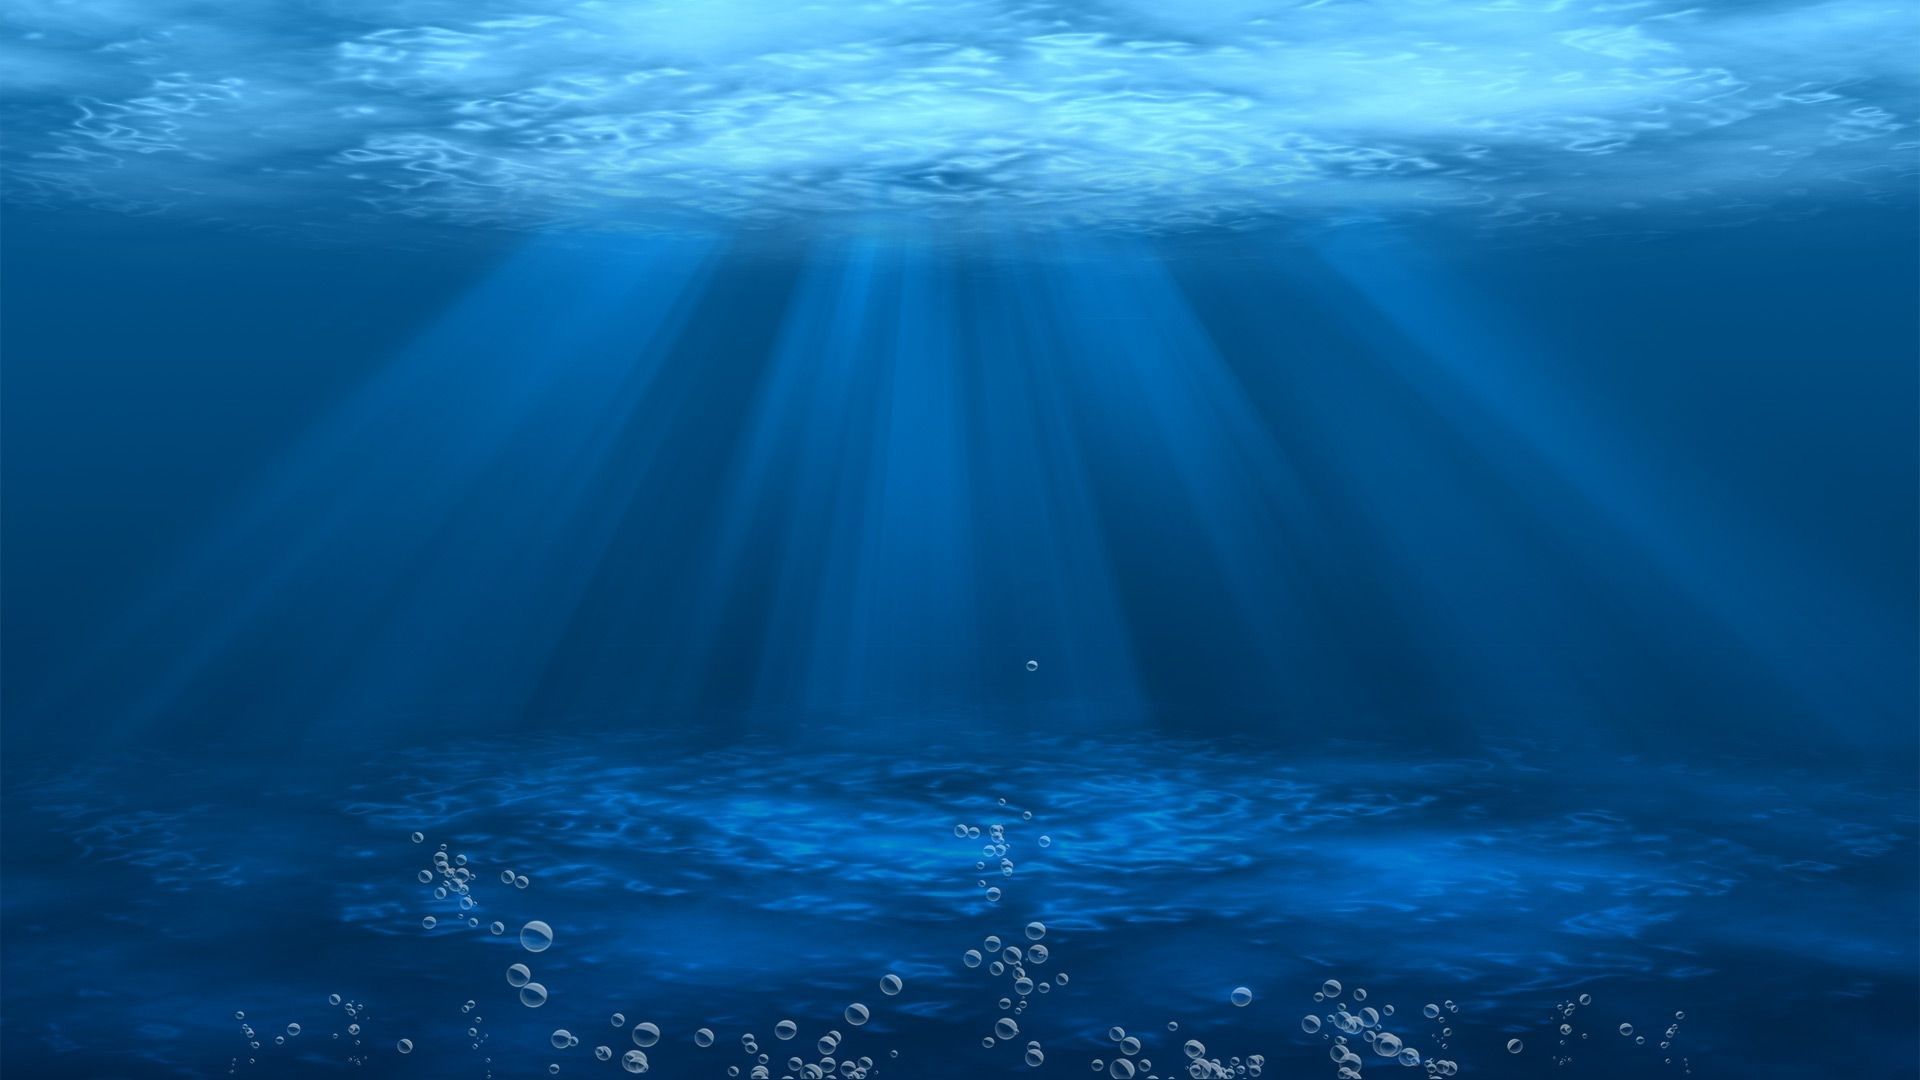 sfondo del desktop subacqueo,blu,acqua,risorse idriche,cielo,onda